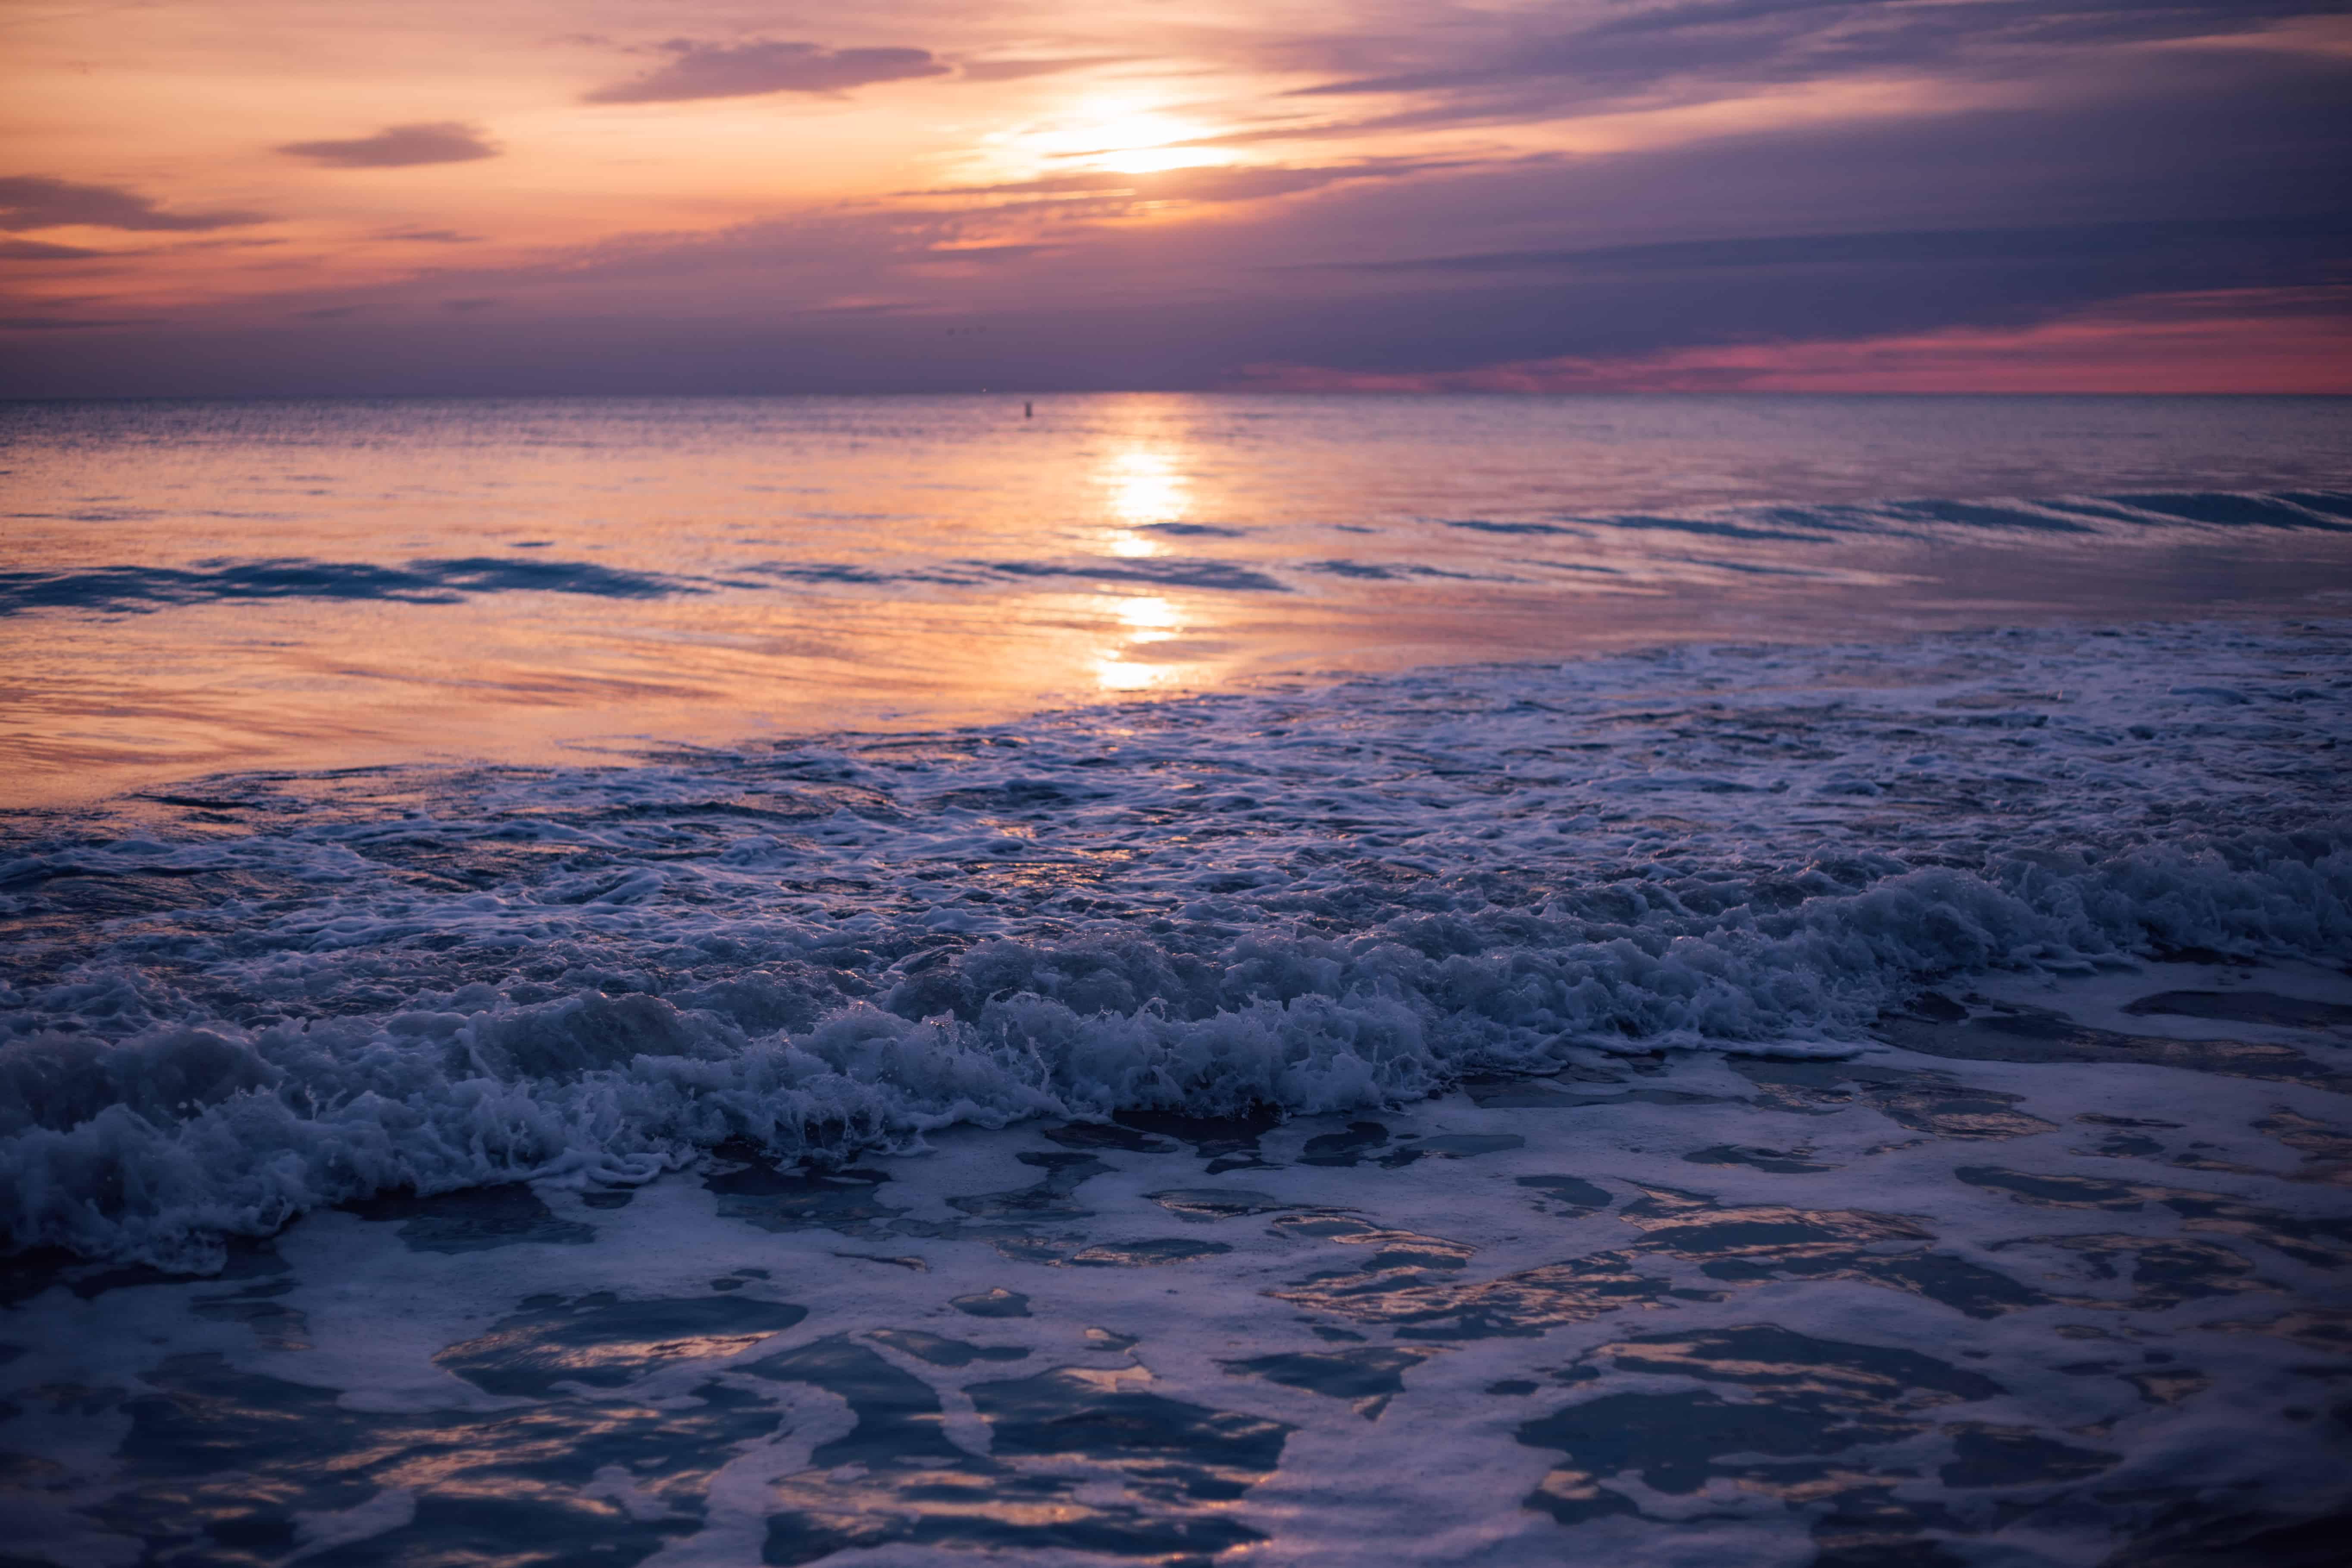 Waves crashing on shore at sunset